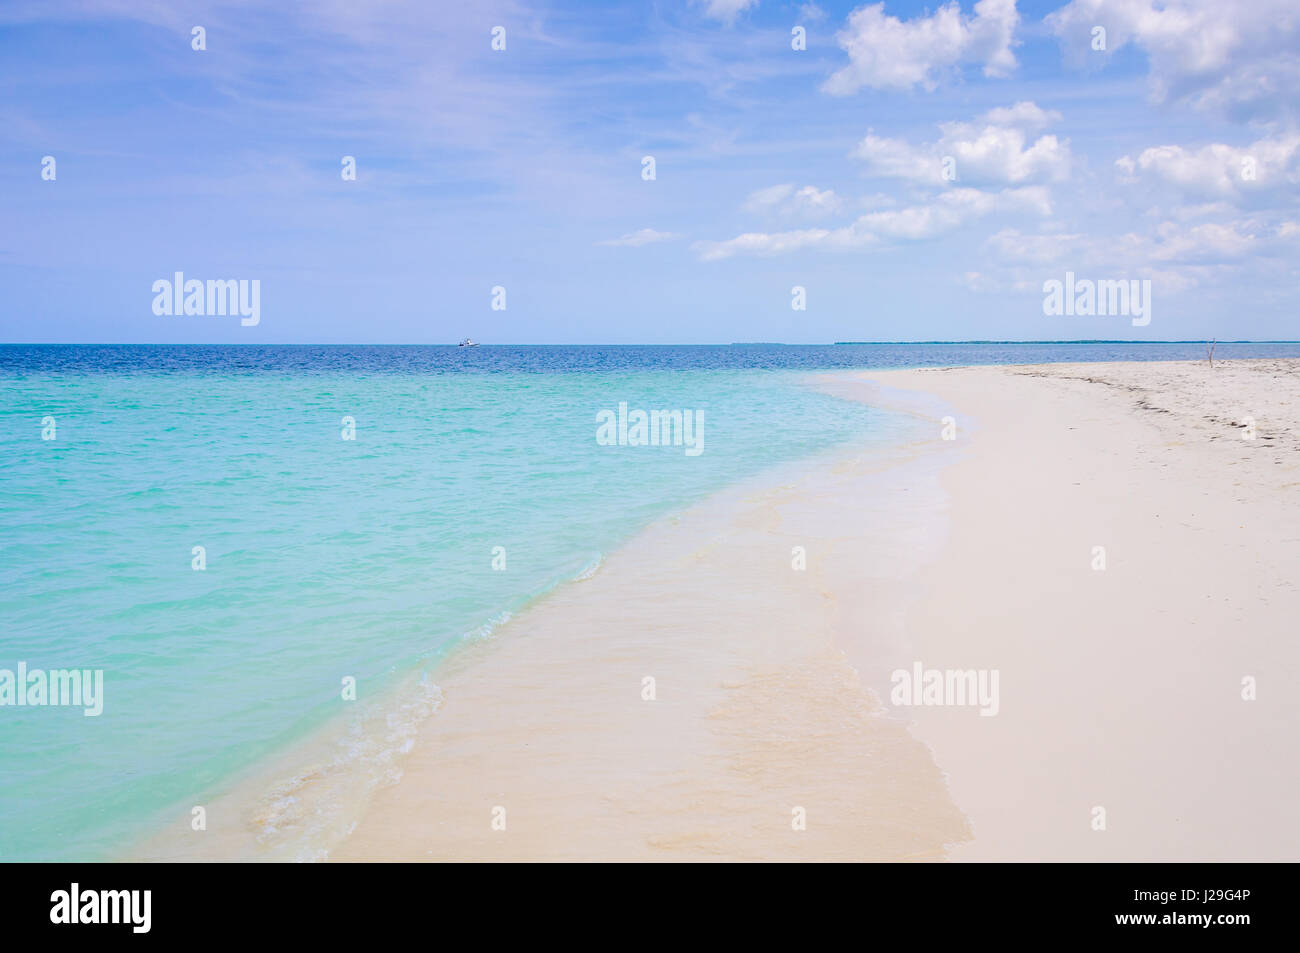 Da solo in una zona appartata spiaggia di sabbia bianca nel tropical Cayo Levisa isola di Cuba Foto Stock